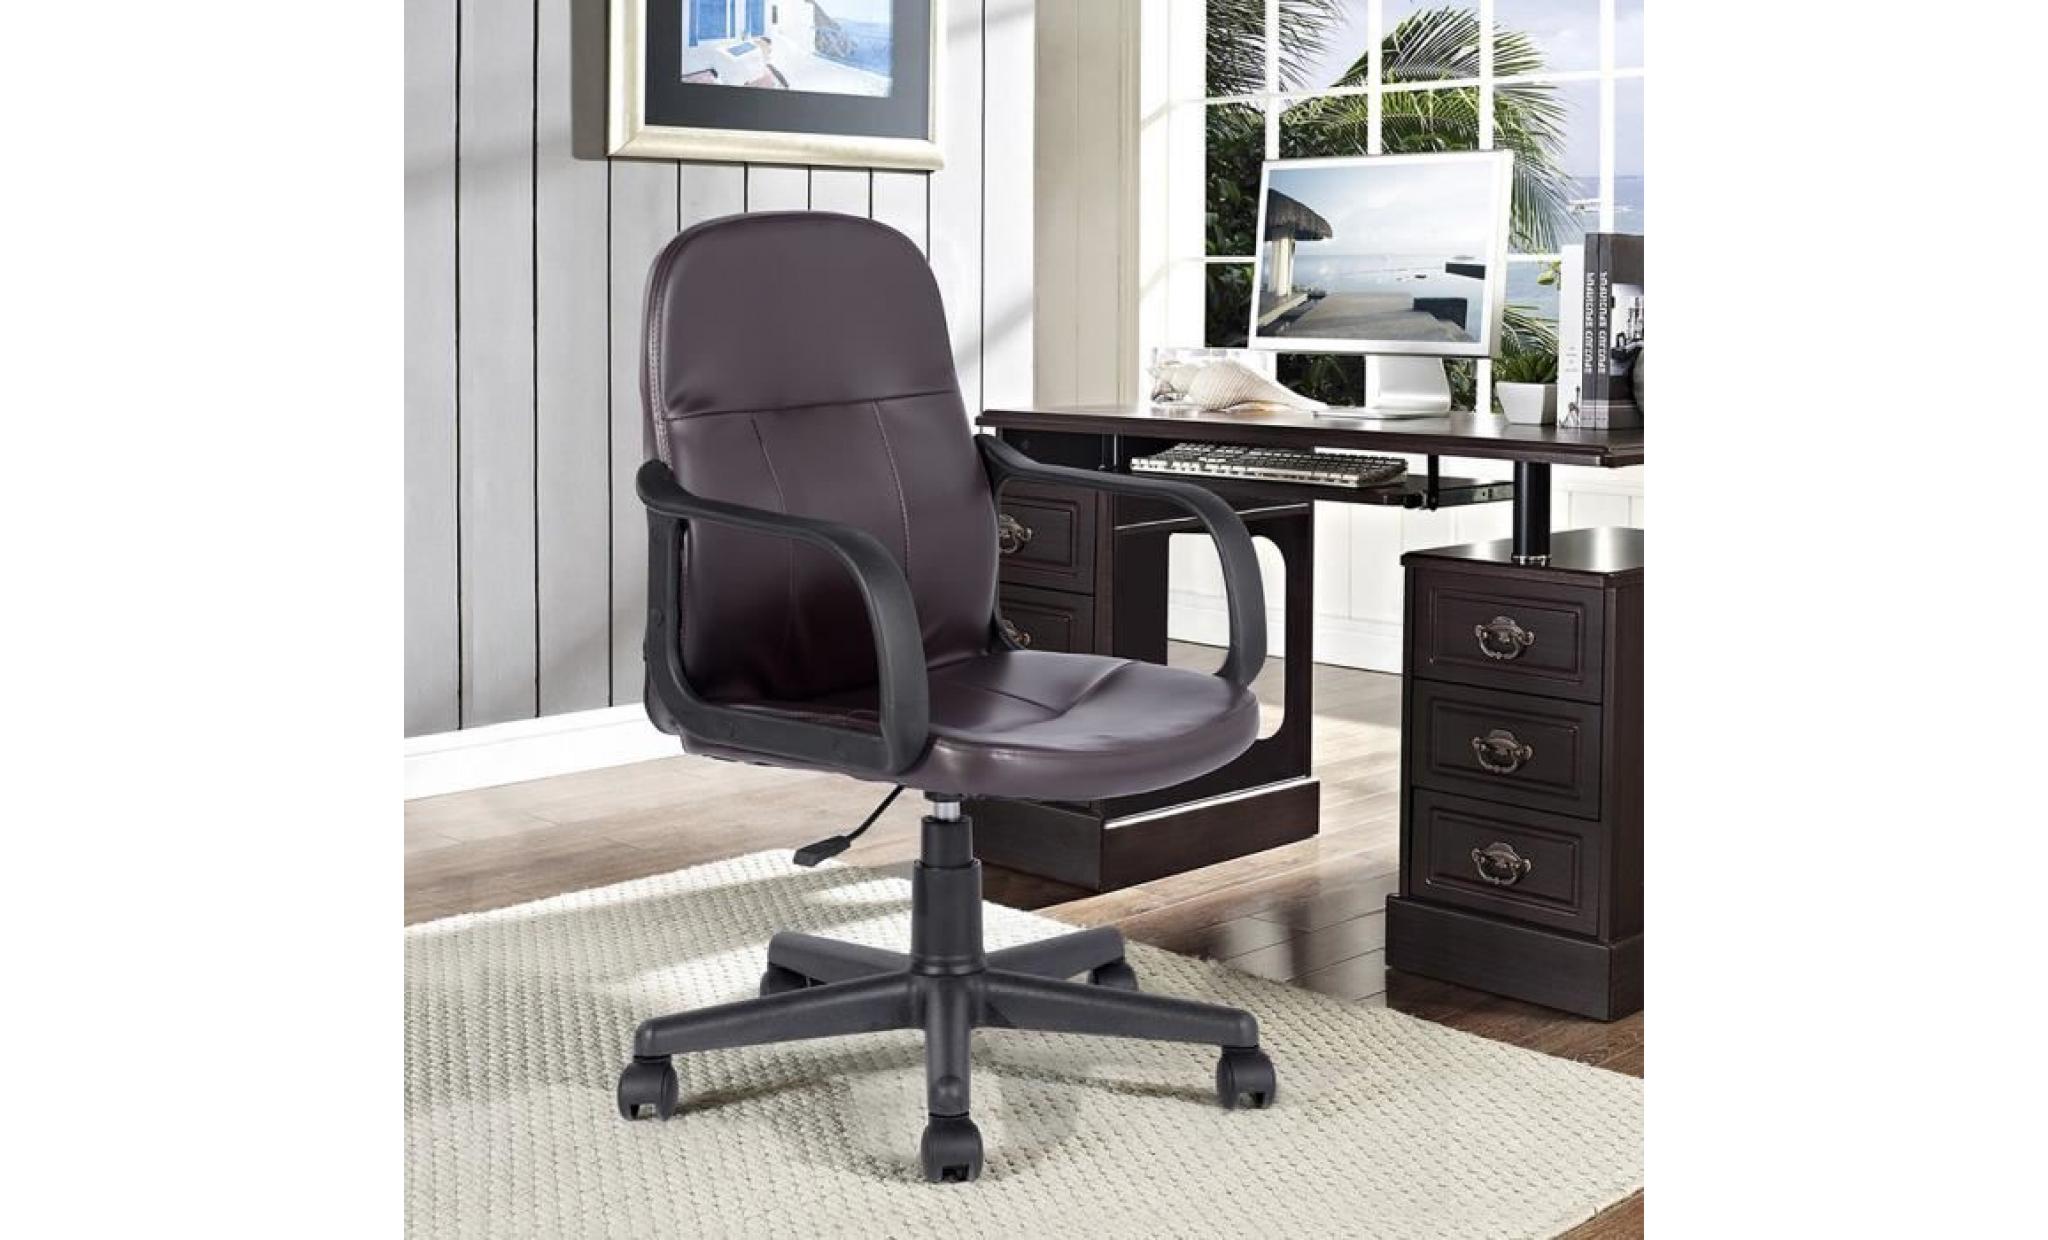 fauteuil de bureau chaise    pvc hauteur réglable roulettes pivotantes    marron    57x56x87 97cm